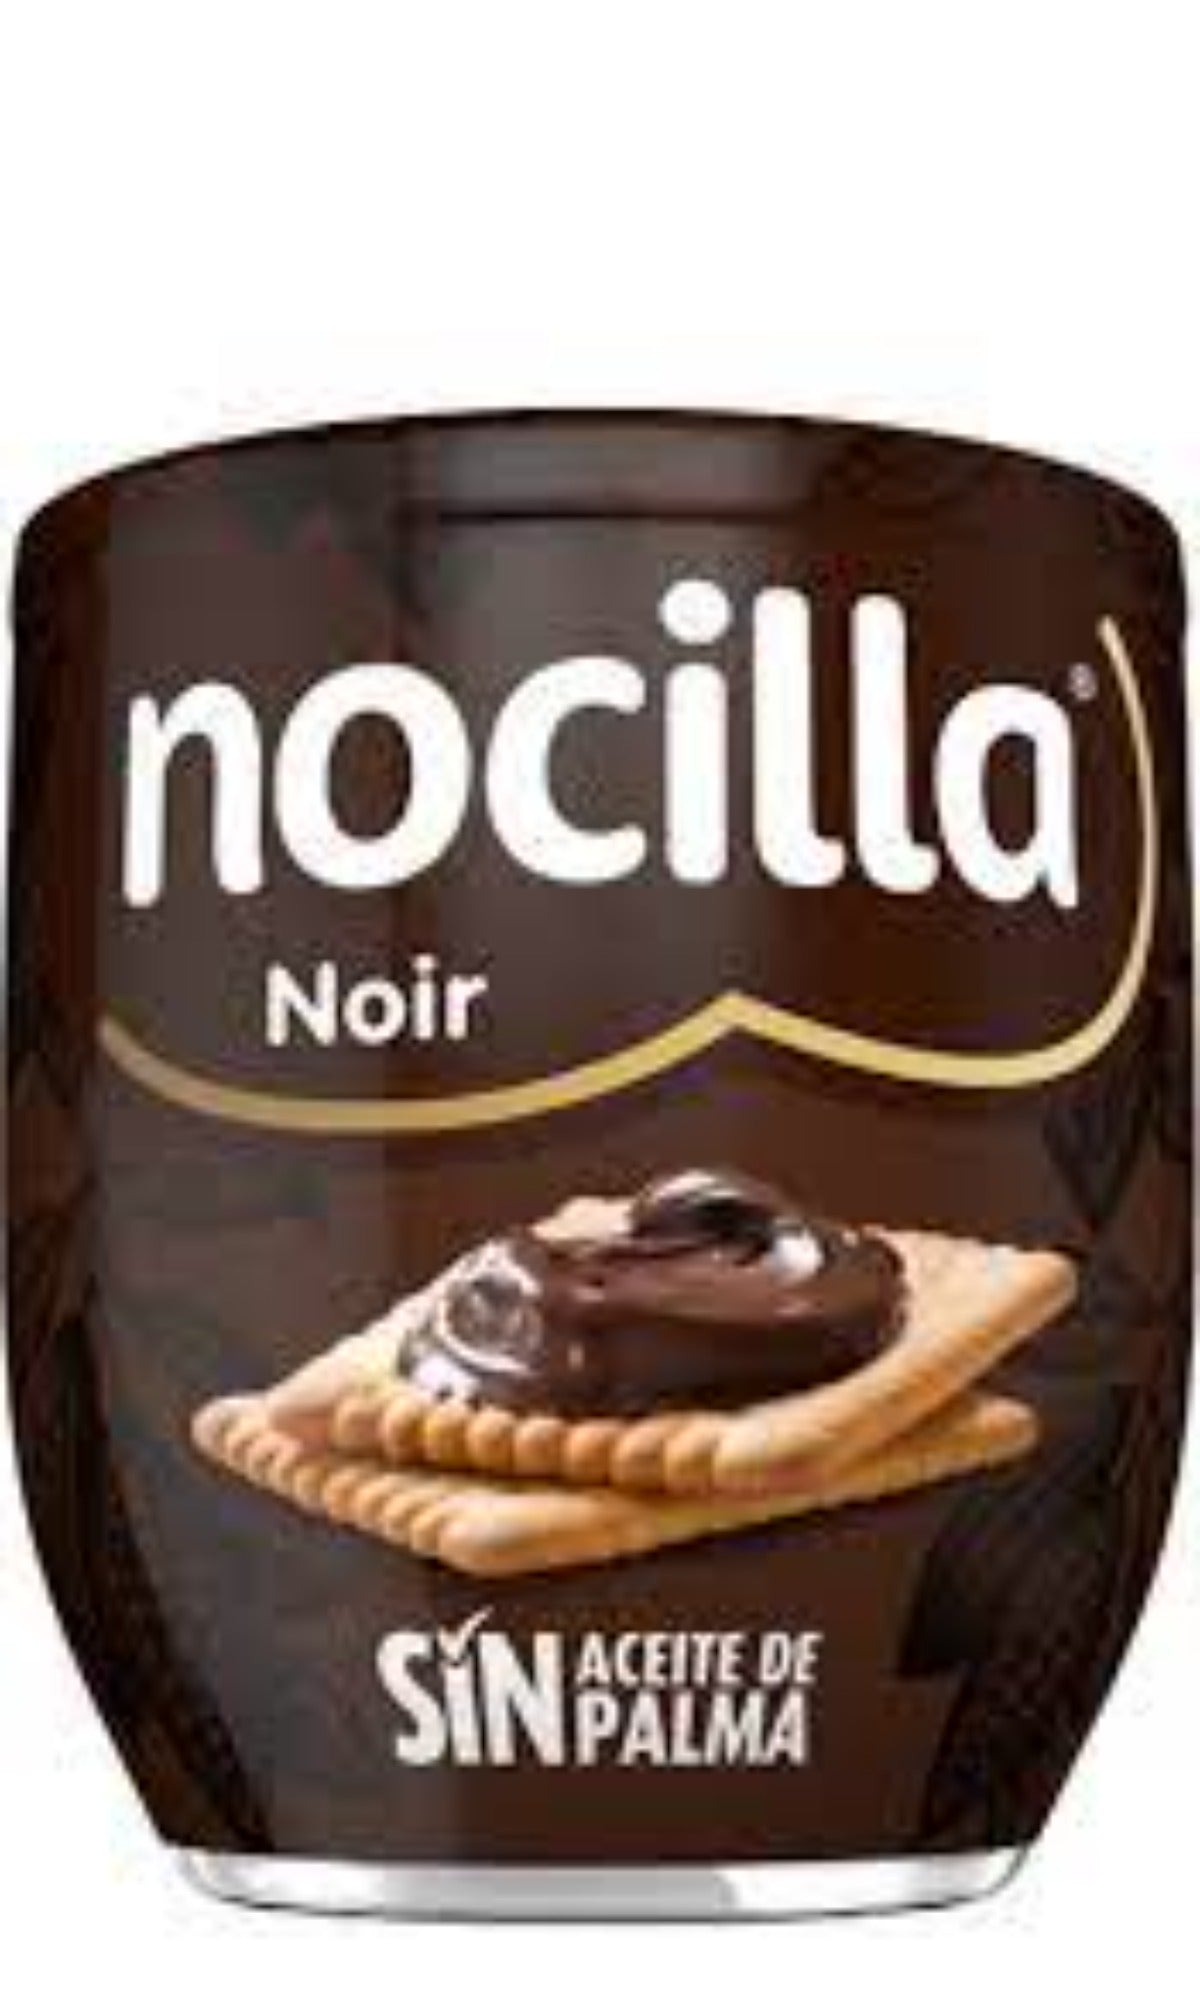 Nocilla Noir Spanish Hazelnut Spread 180g - 4 Pack 720g total